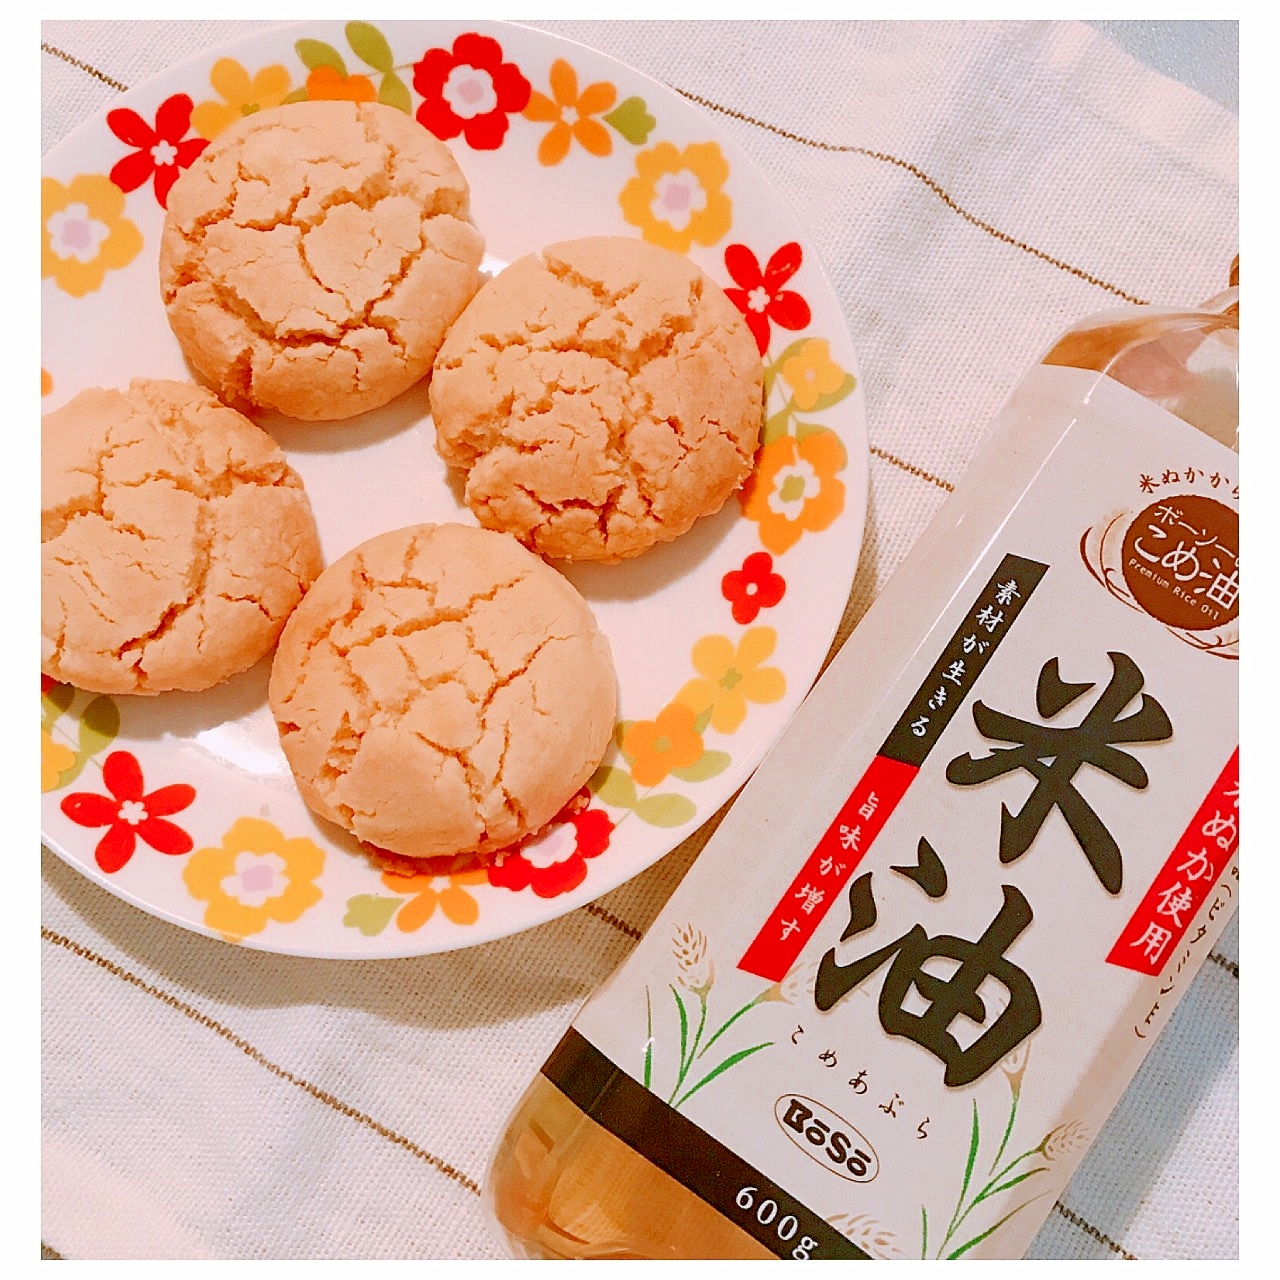 バター不使用 カリッと サクサク 米油deクッキー レシピ 作り方 By こし餡 楽天レシピ